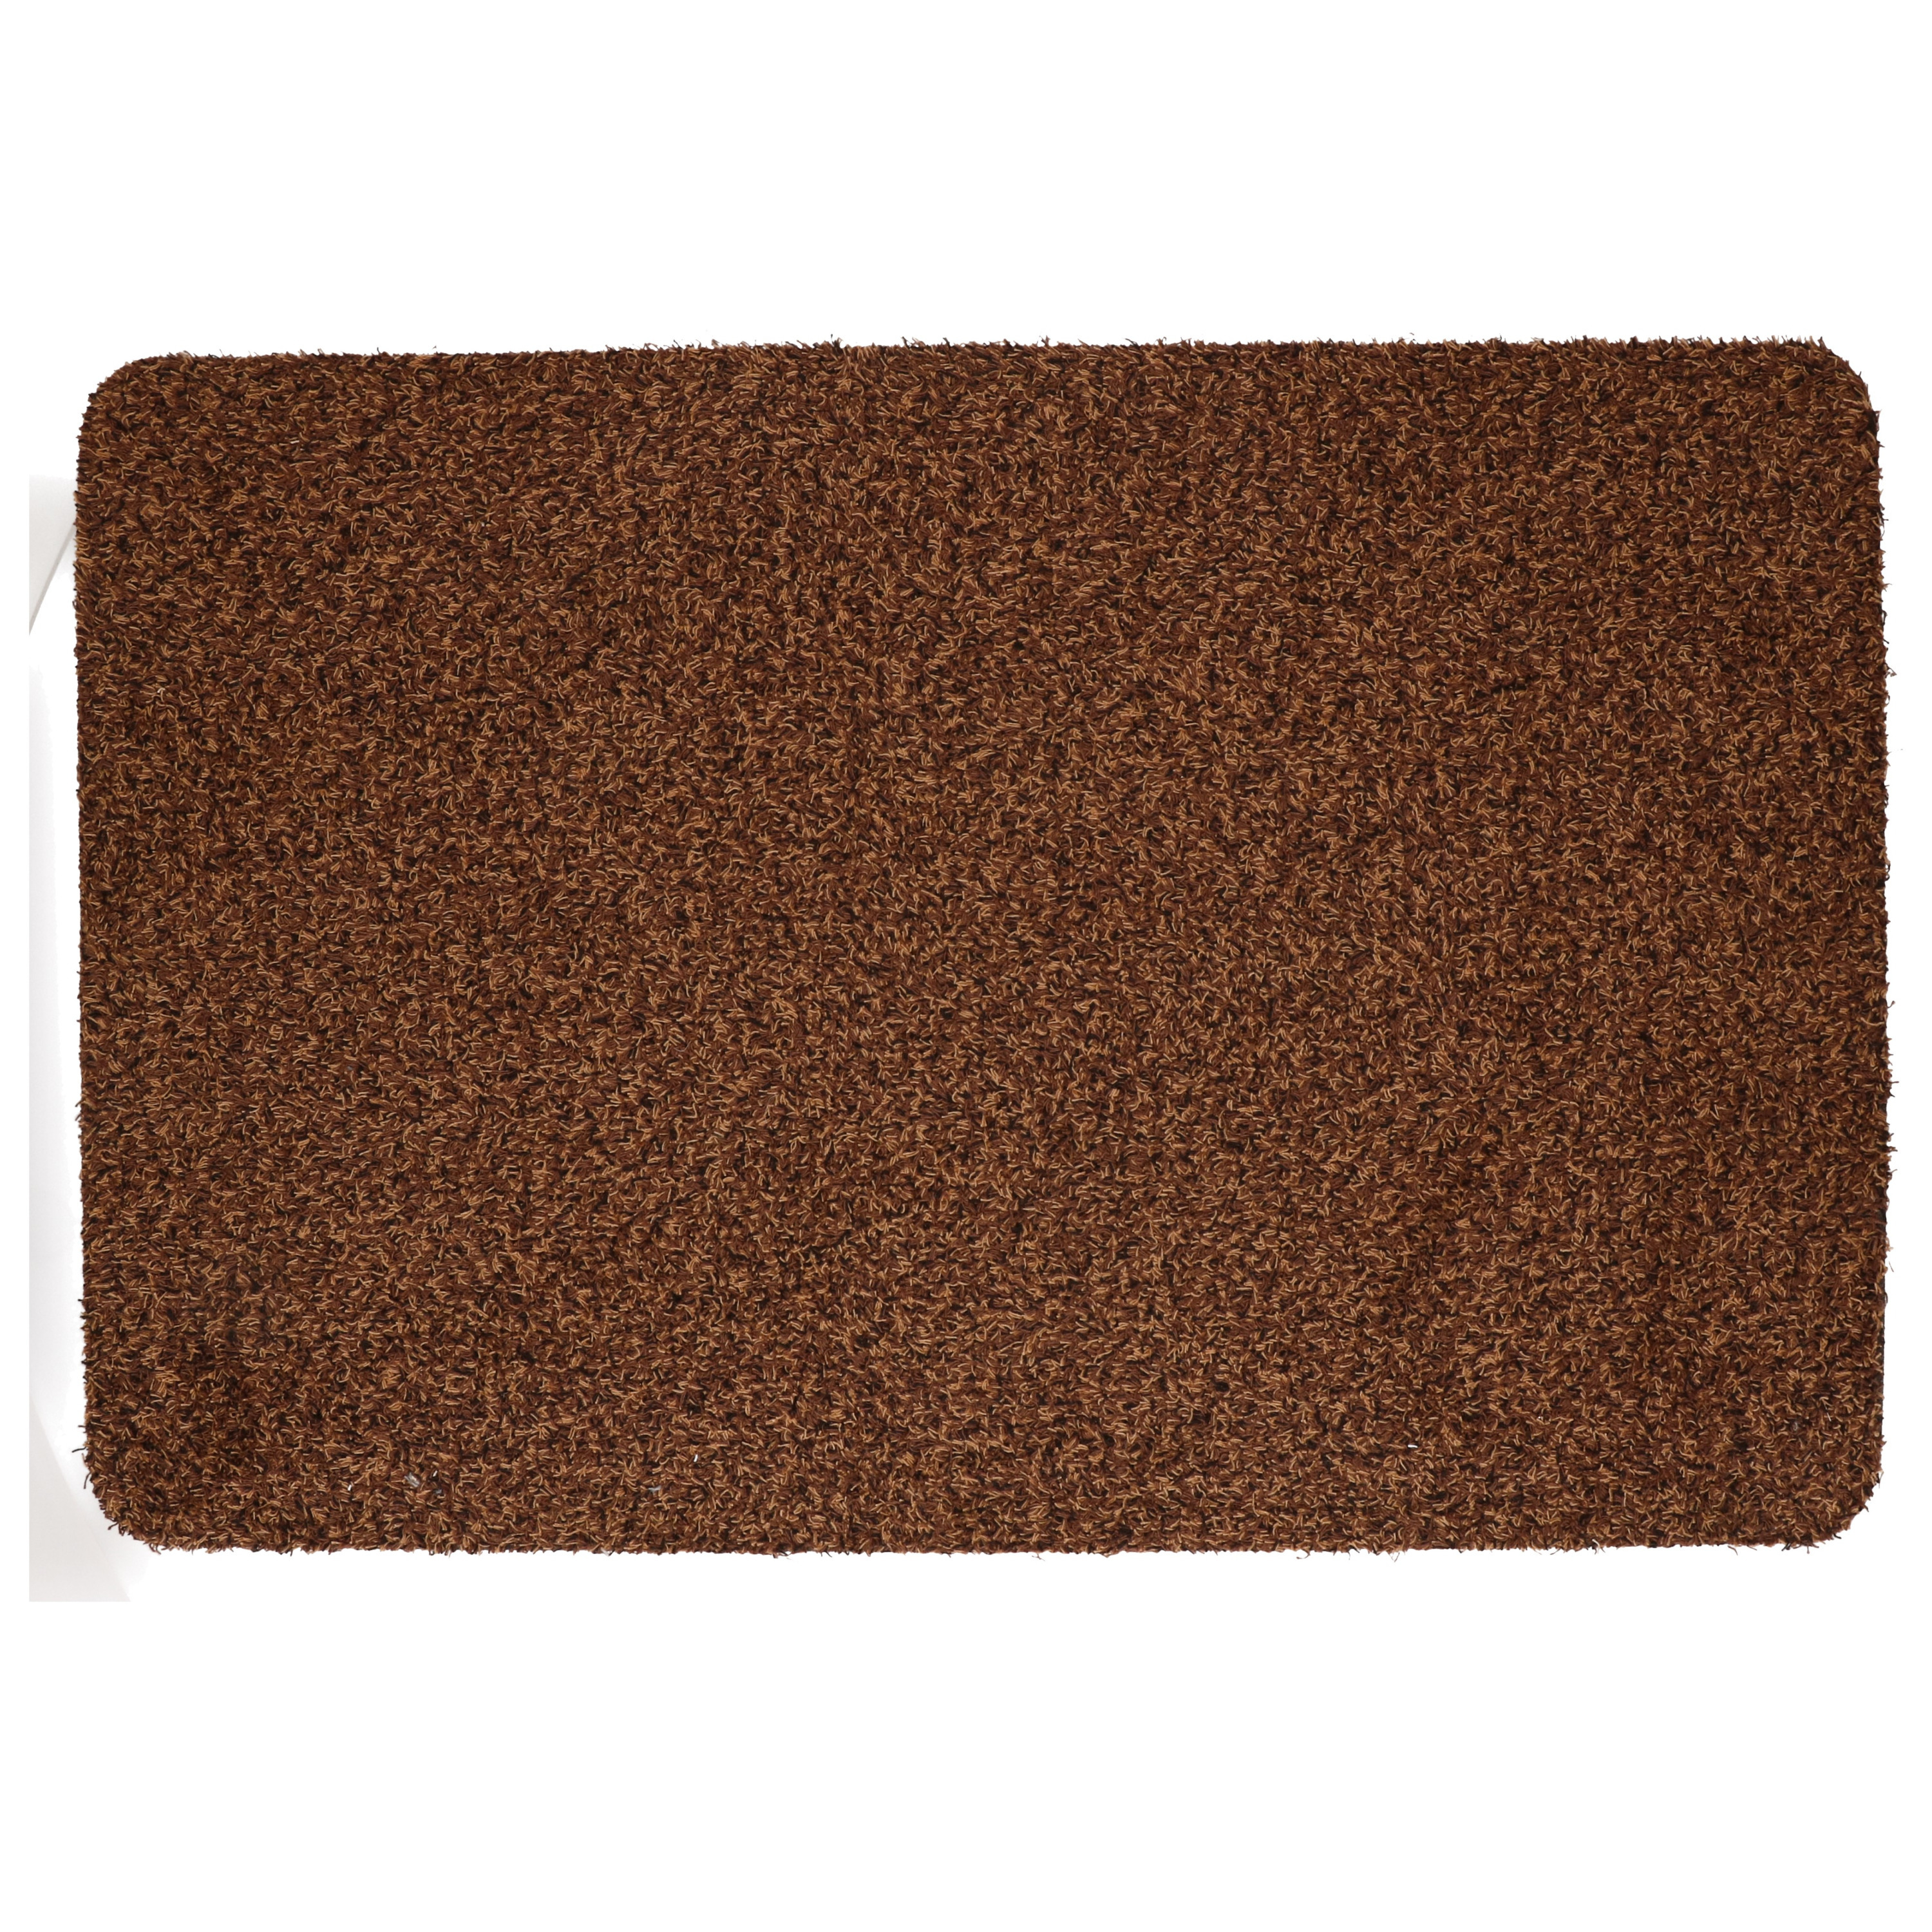 Anti slip deurmat-schoonloopmat pvc bruin extra absorberend 60 x 40 cm voor binnen